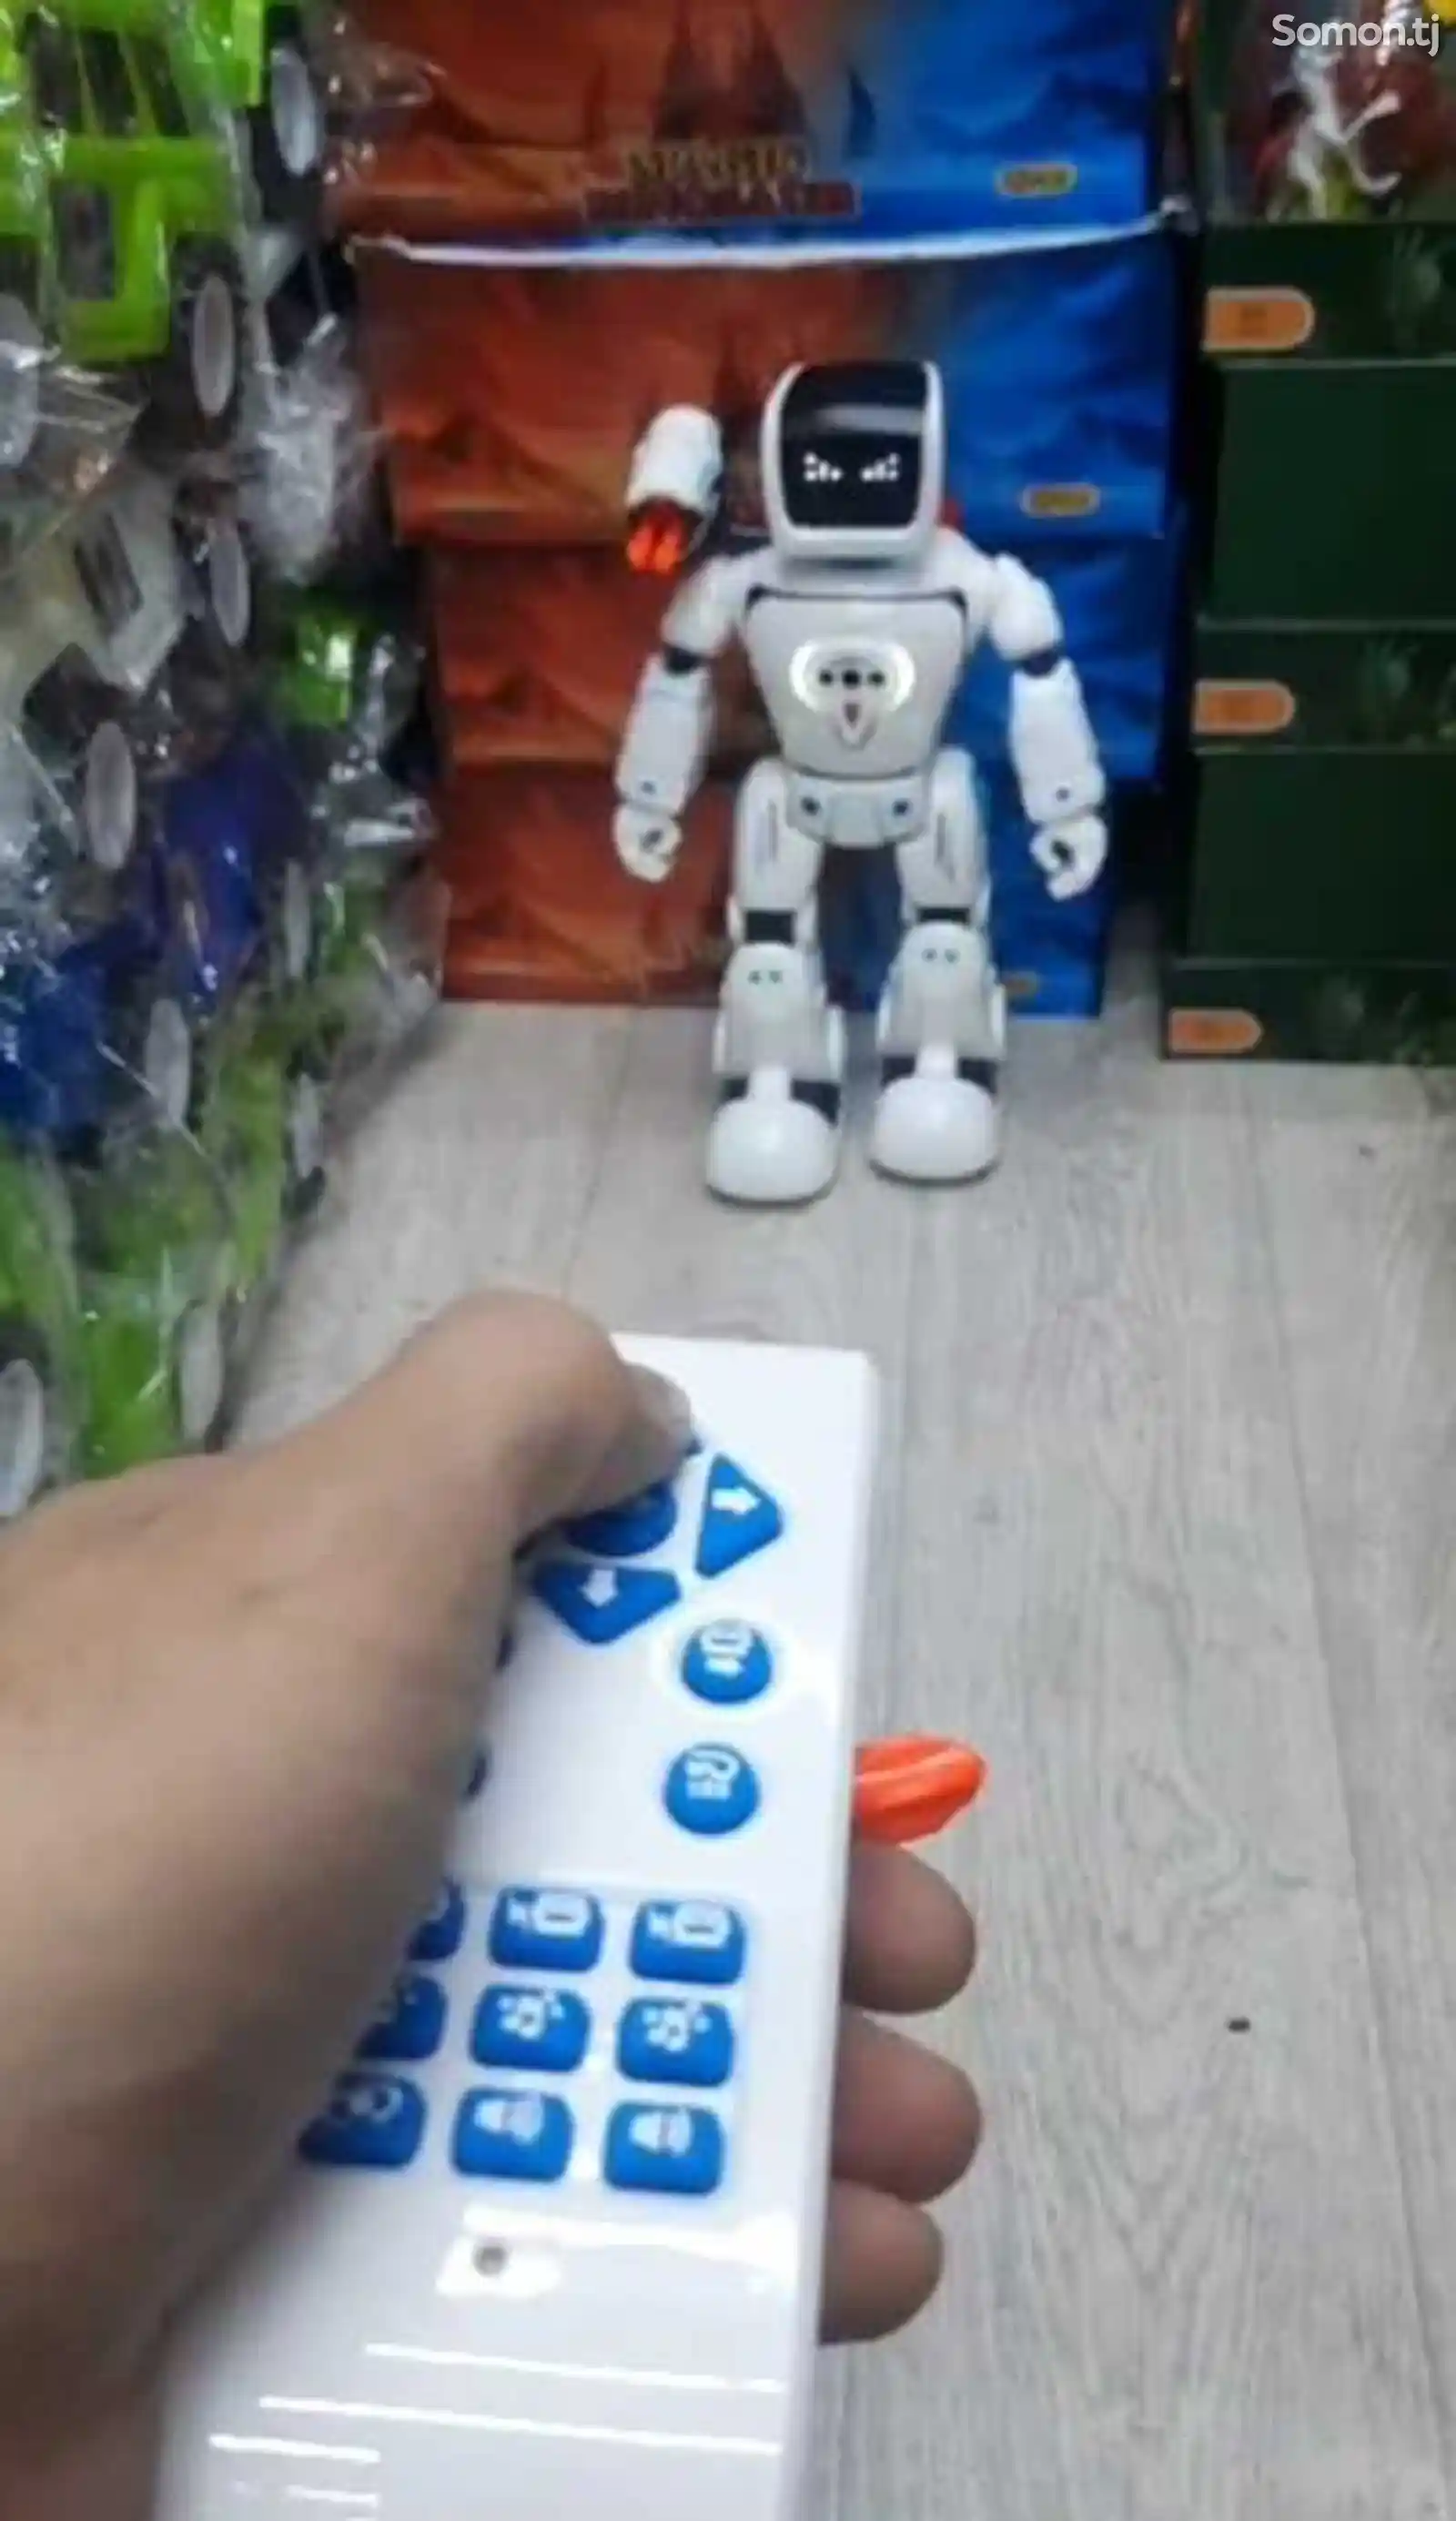 Робот-2